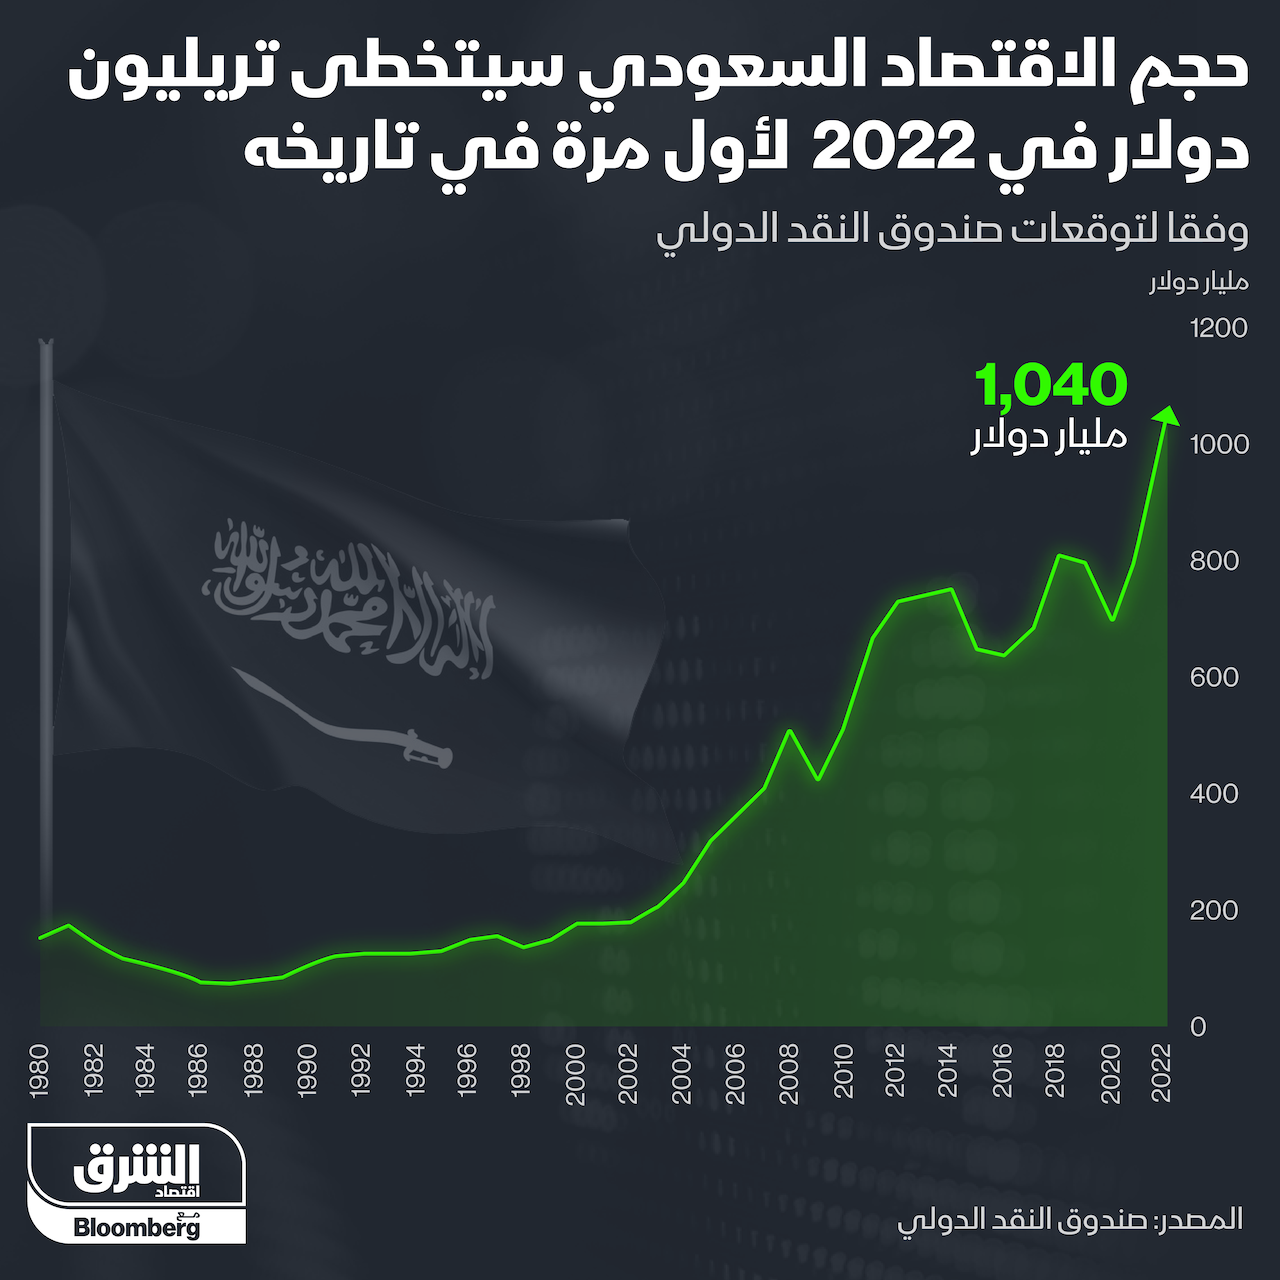 حجم الاقتصاد السعودي يتخطى تريليون دولار في 2022